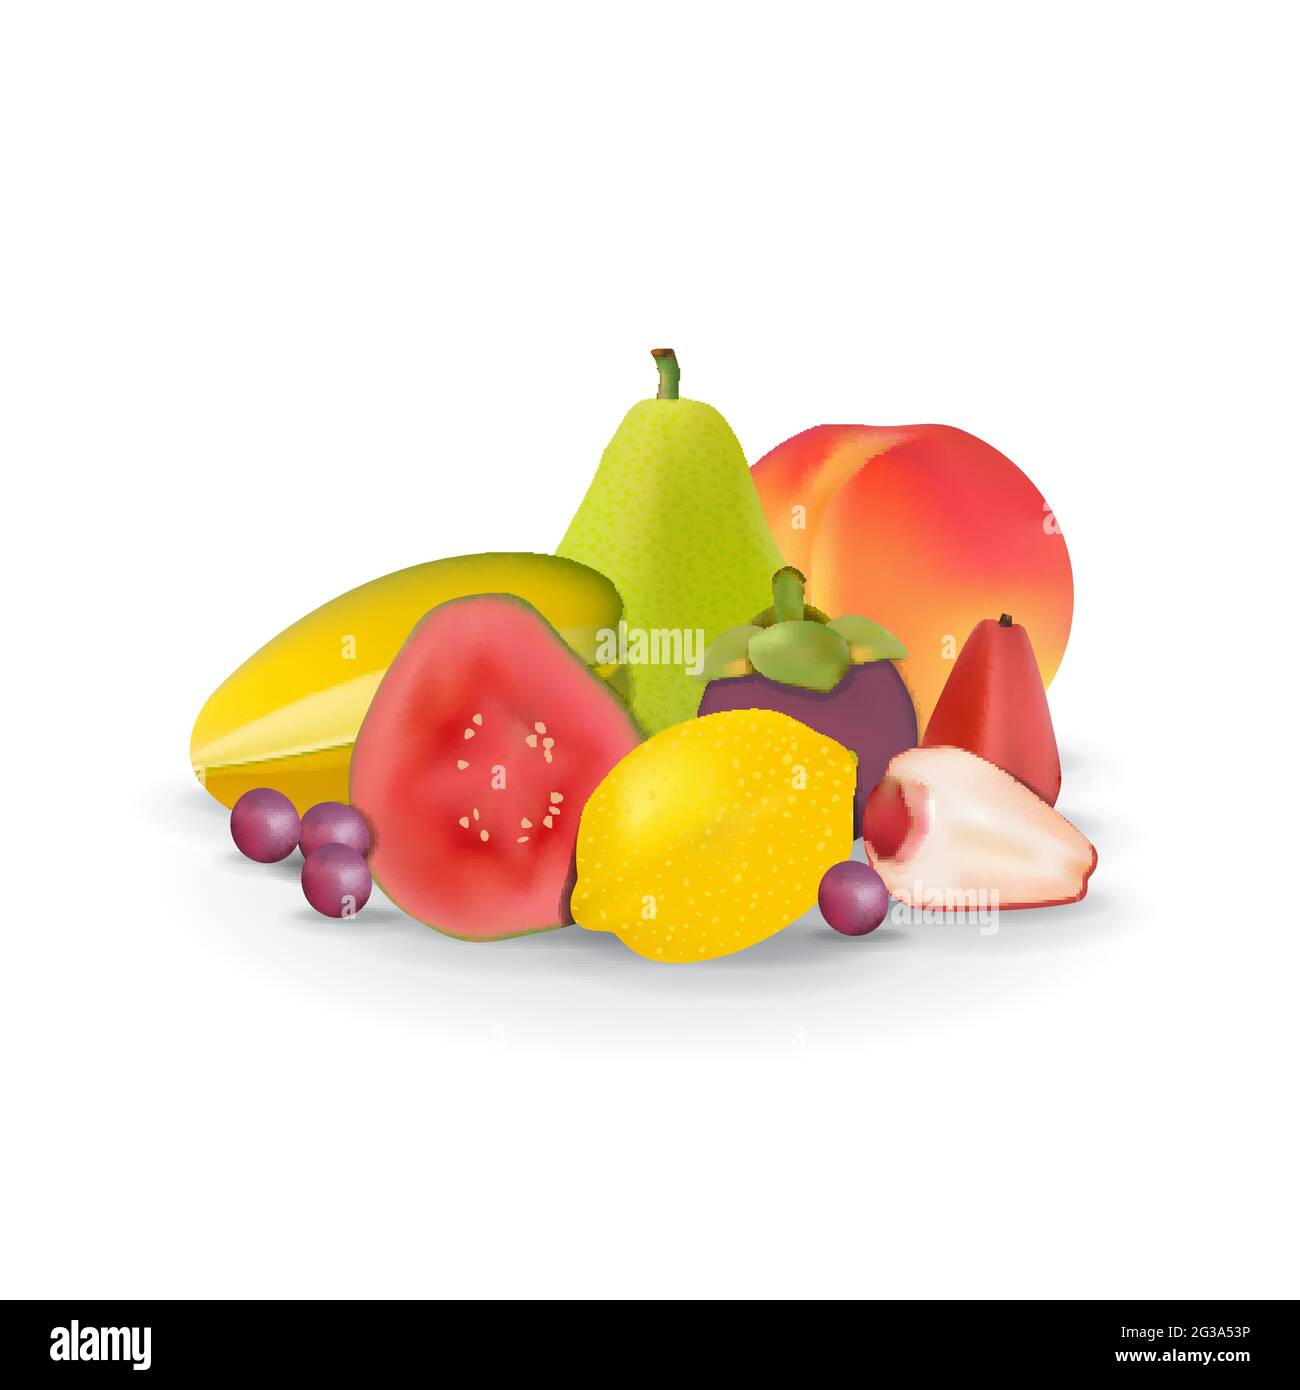 Frutta fresca naturale realistica su White Summer Isolated Vector Illustration 05 Illustrazione Vettoriale